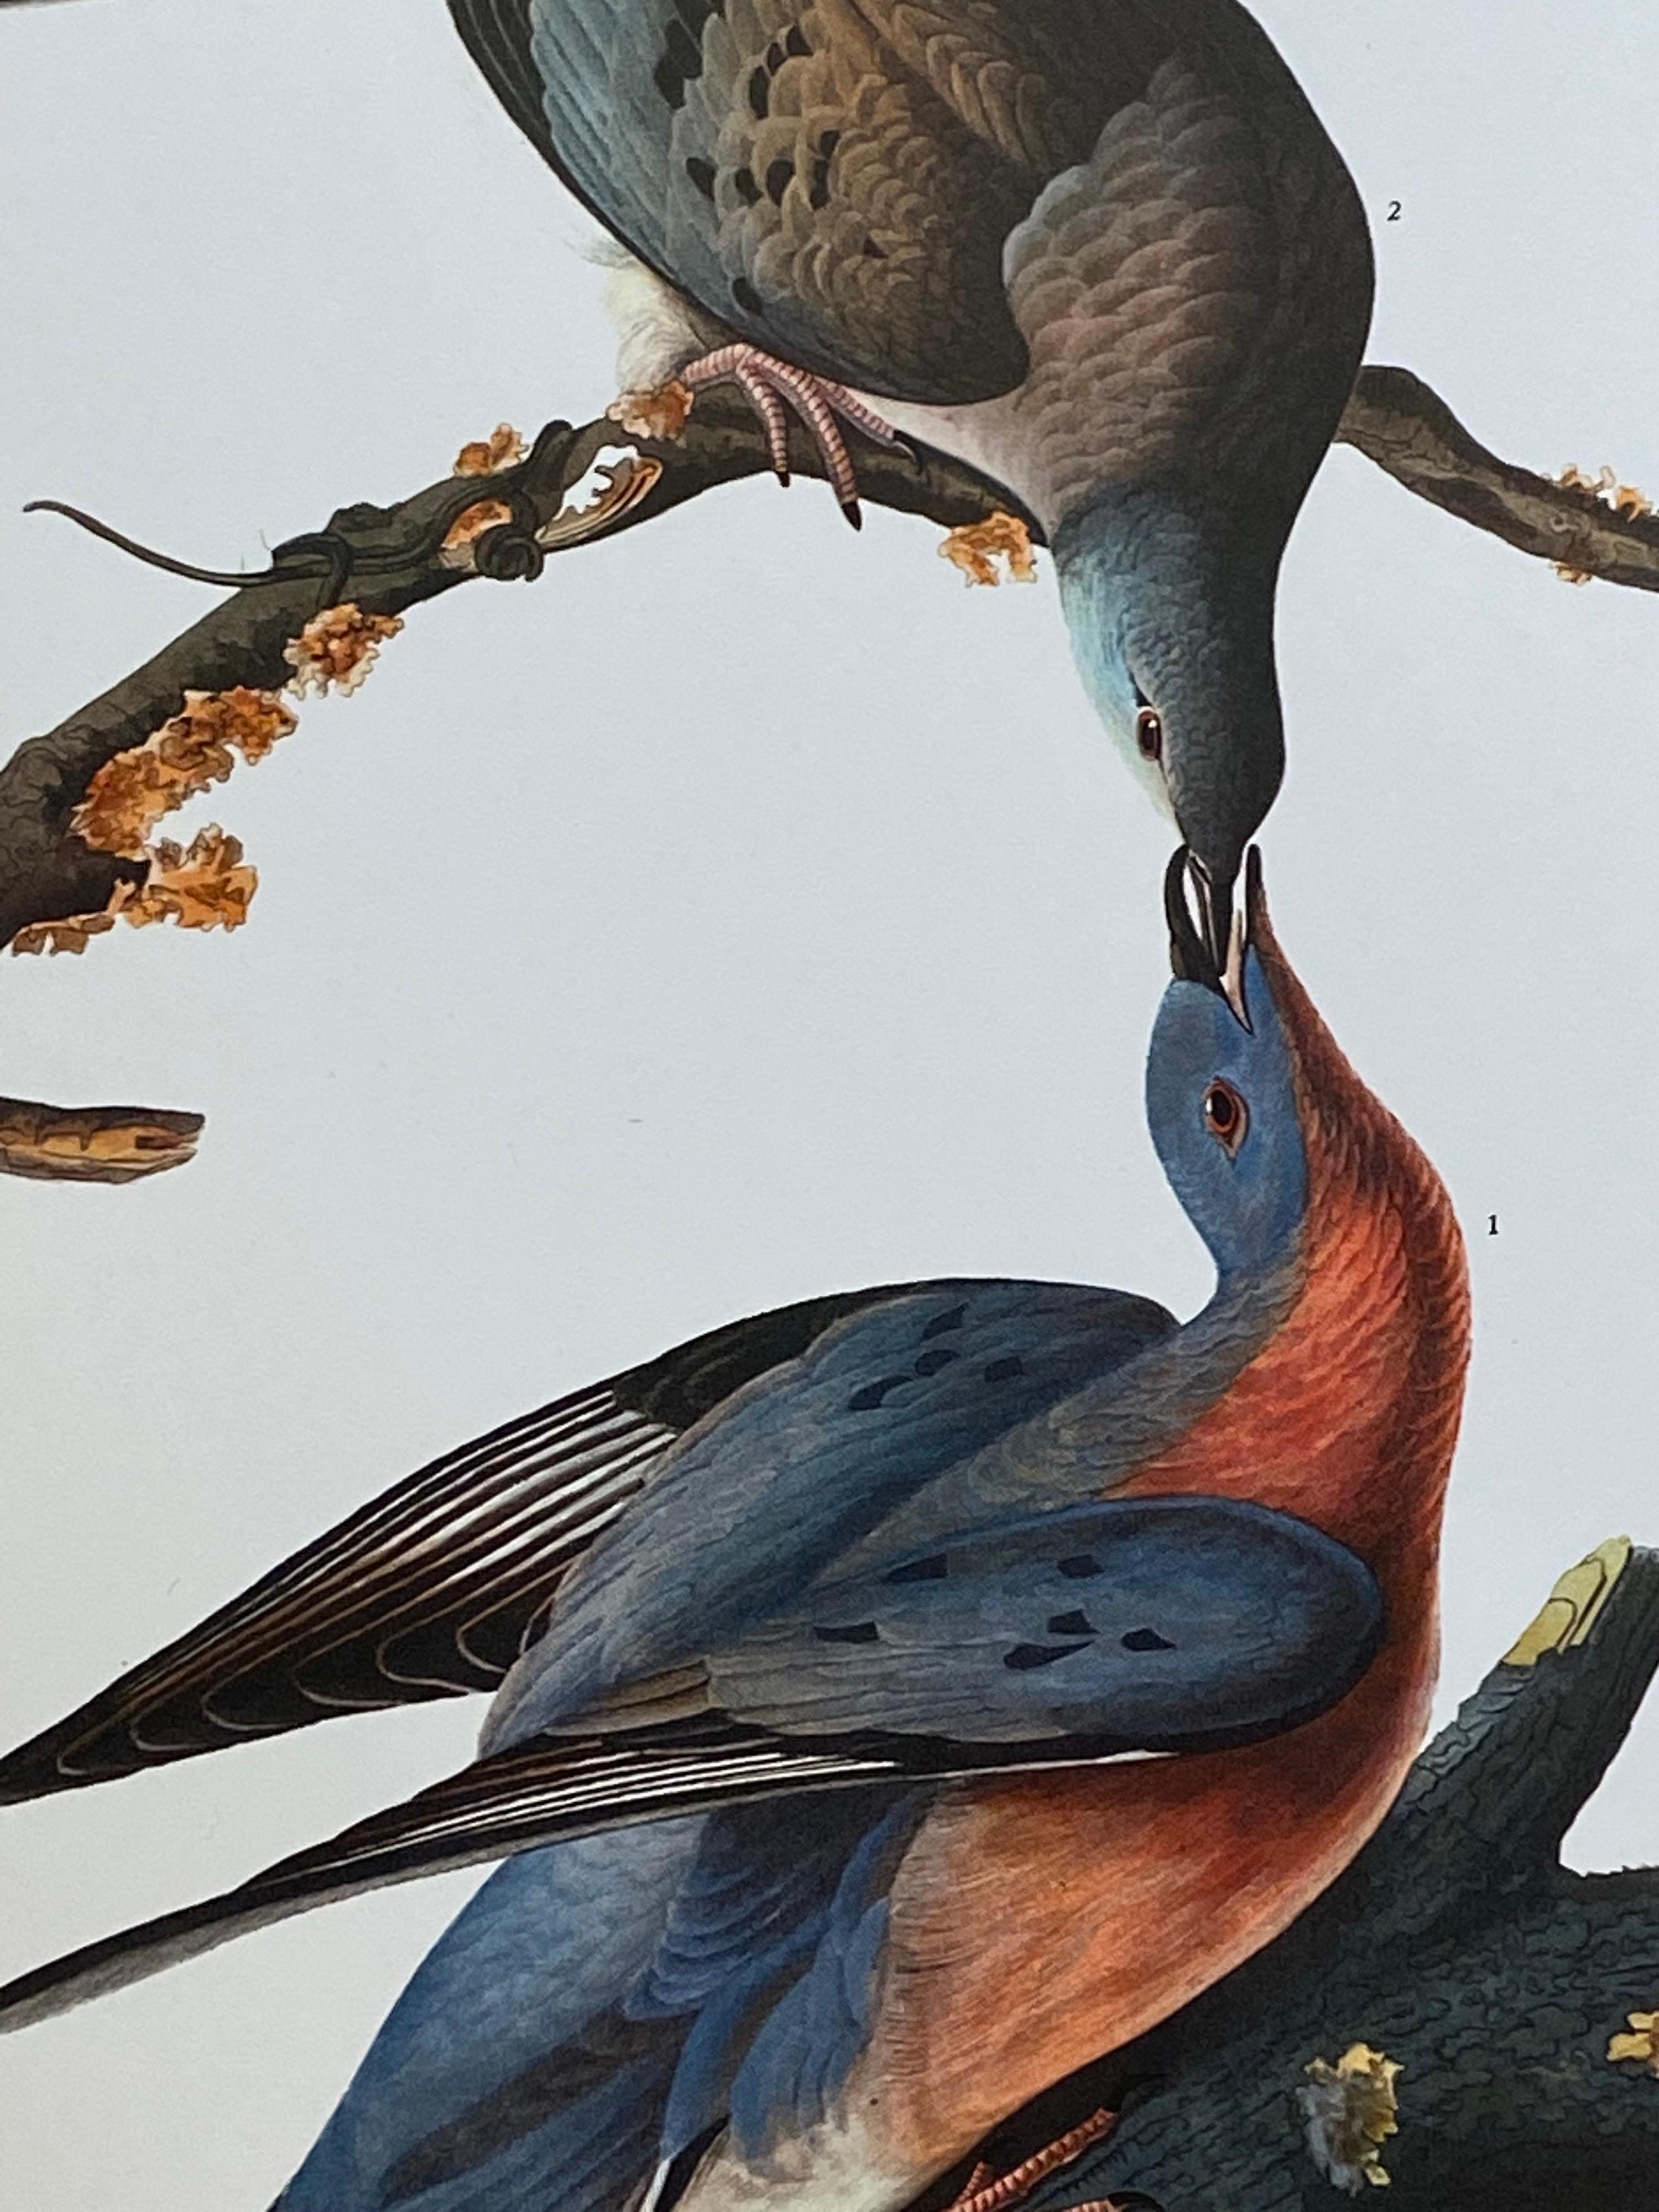 Klassischer Vogeldruck, 
nach John James Audubon, 
gedruckt von Harry N. Abrams, Verlag, New York
ungerahmt, 17 x 14 Zoll, Farbdruck auf Papier
zustand: sehr gut
herkunft: von einem privaten Sammler hier im Vereinigten Königreich.